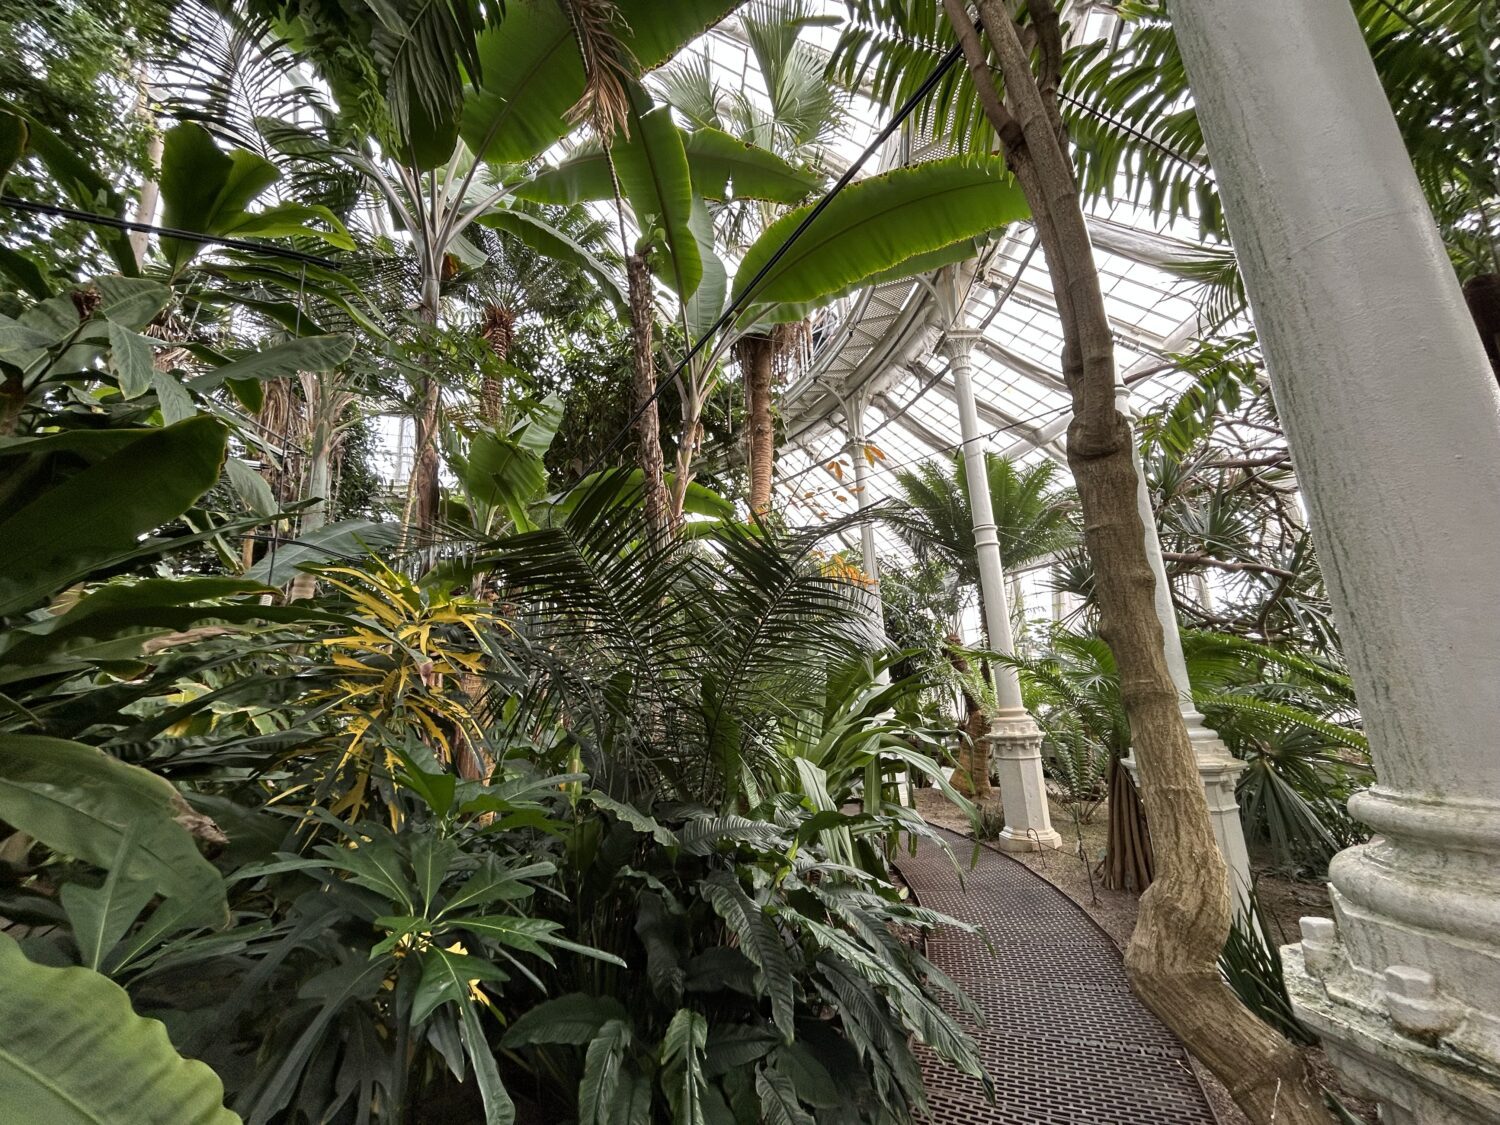 Botanic Garden interior